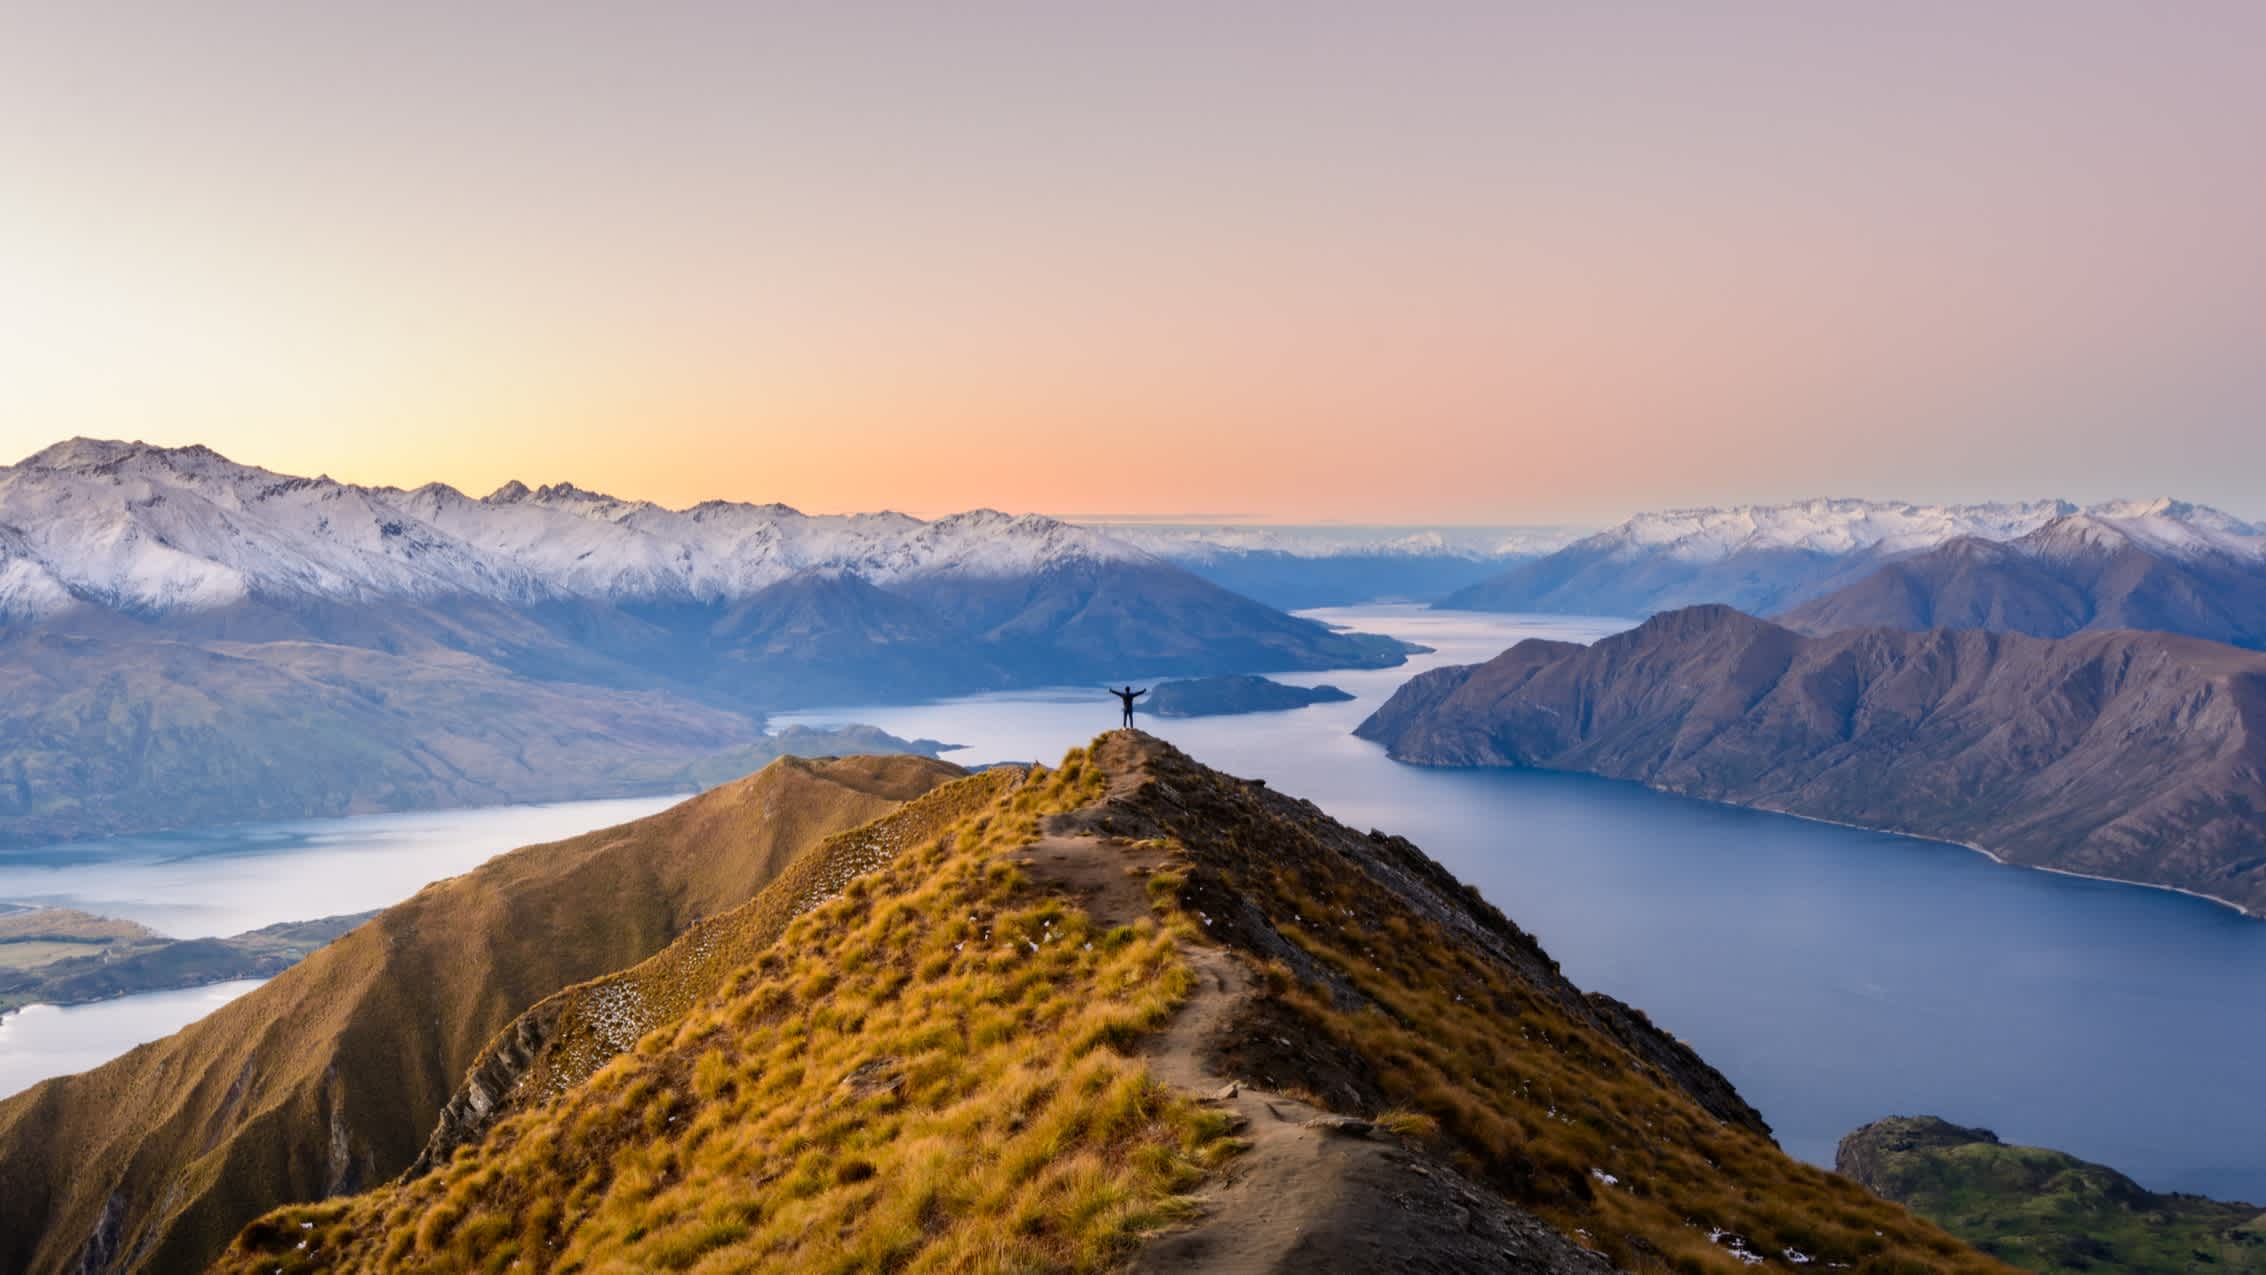 Personne les bras tendus sur le Roy's Peak avec vue sur le paysage, en Nouvelle-Zélande.